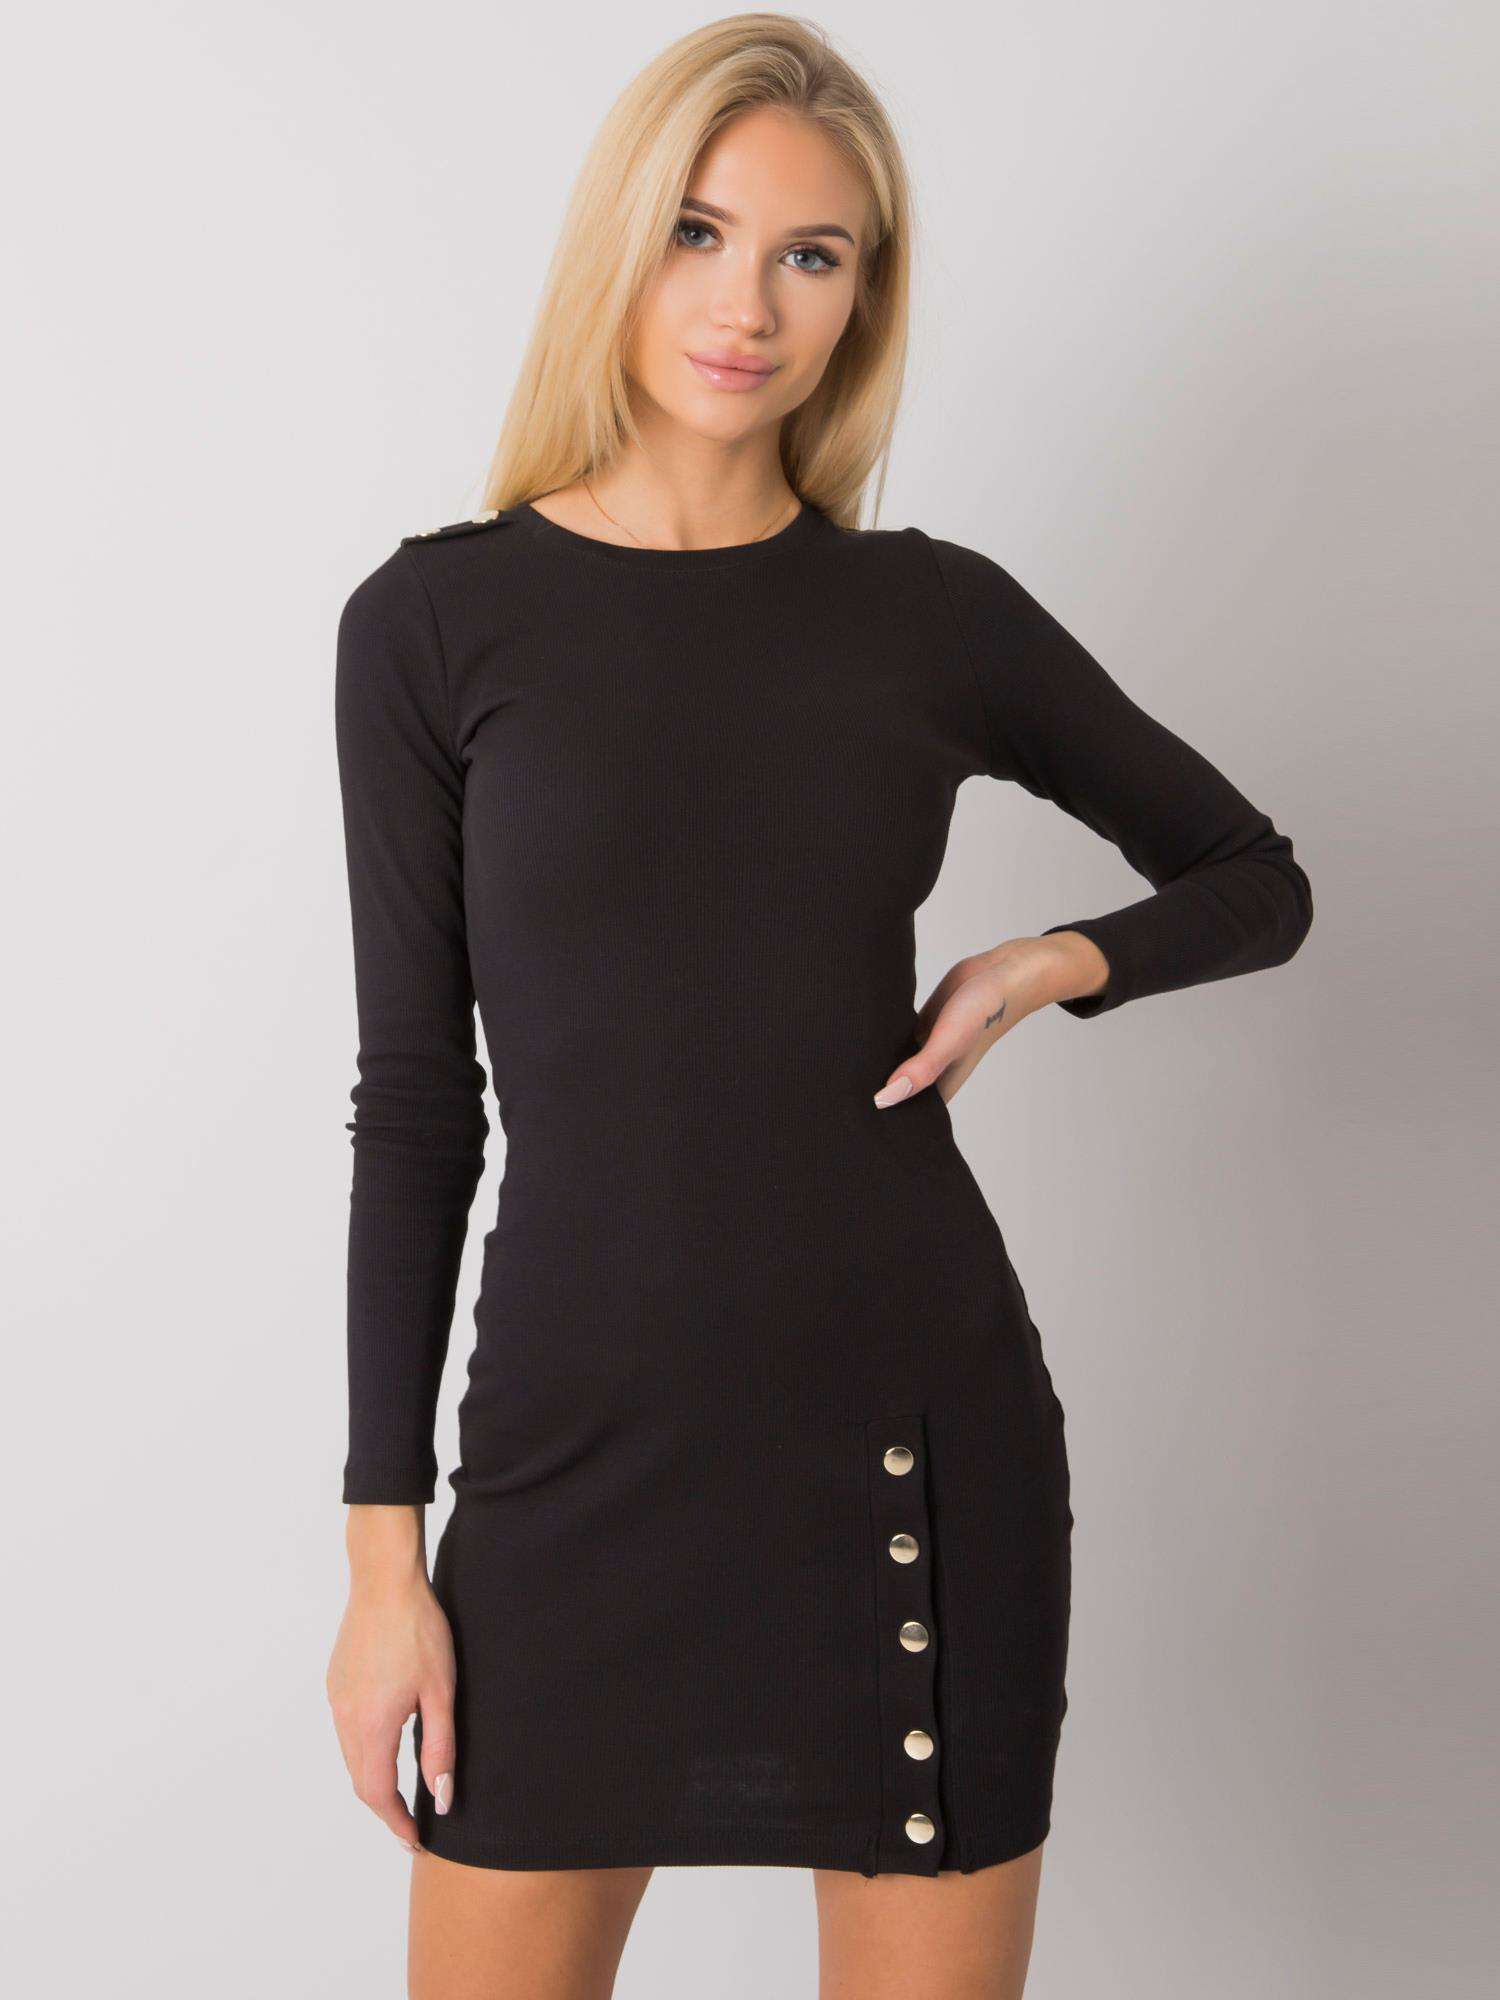 Černé dámské mini šaty s dlouhými rukávy RV-SK-7246.29-black Velikost: S